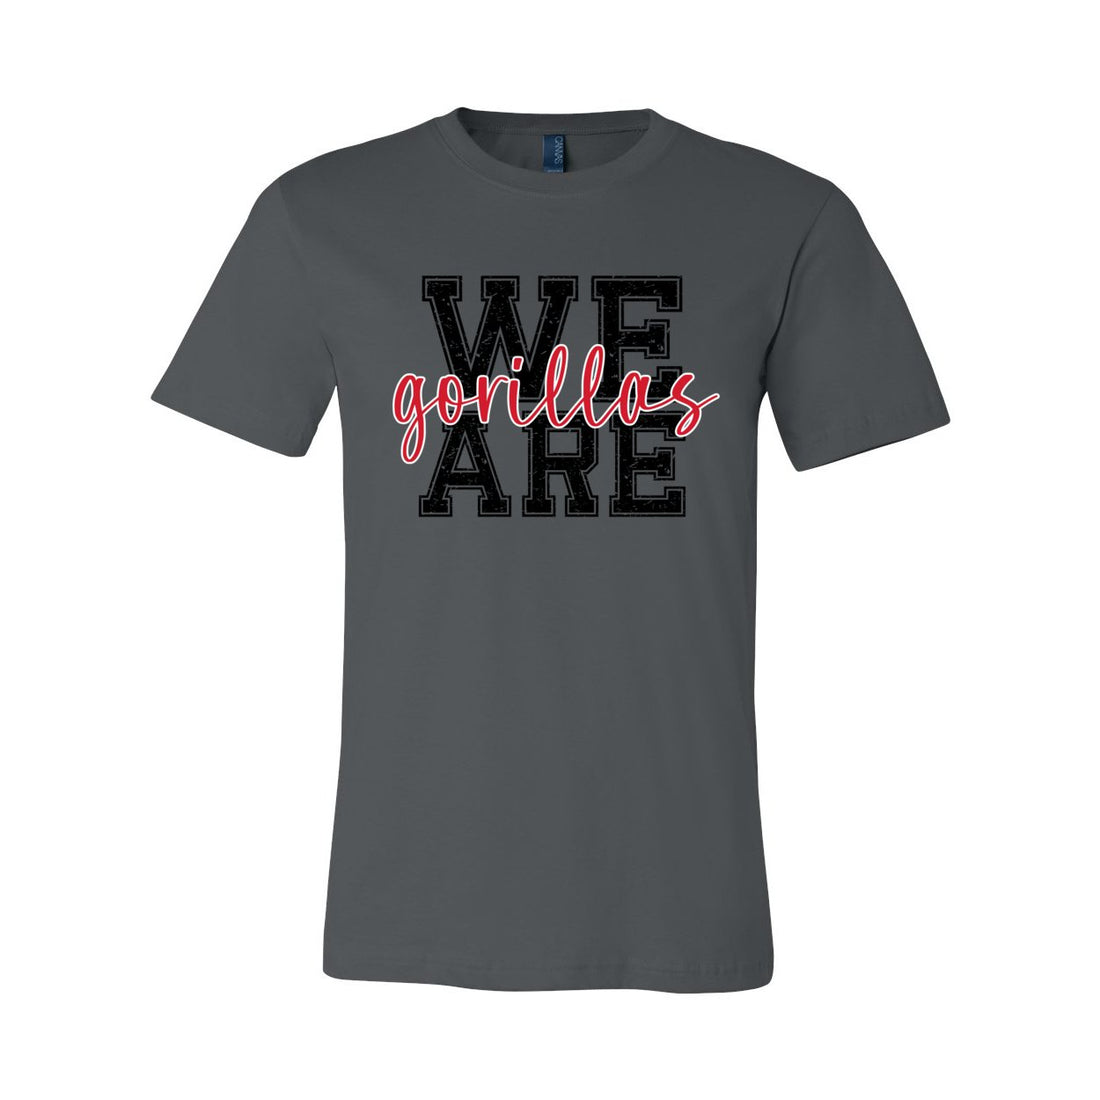 We Are Gorillas Short Sleeve Jersey Tee - T-Shirts - Positively Sassy - We Are Gorillas Short Sleeve Jersey Tee